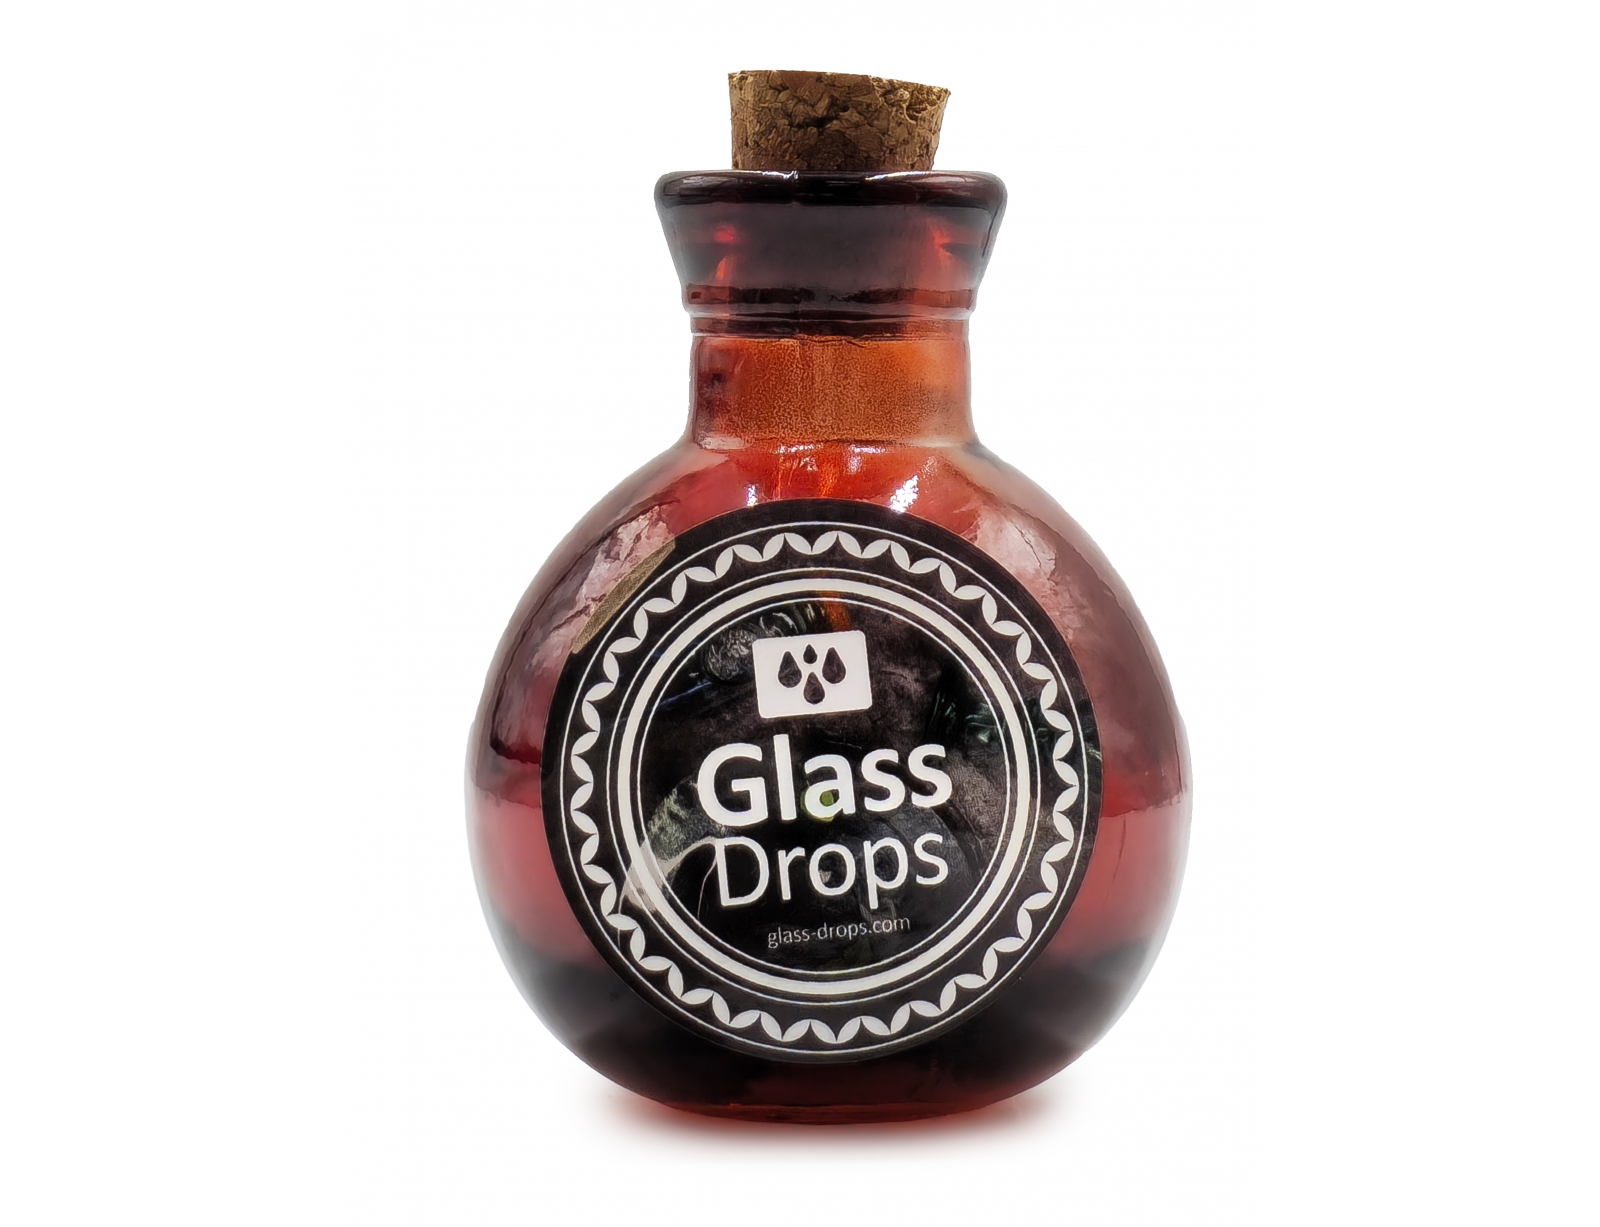 Εικόνα Διακοσμητικό Μπουκάλι με πώμα Glass Drops Βοlas (5321DB738) Aπό 100% ανακυκλωμένο γυαλί, Xωρητικότητας 125ml, Διαστάσεων Ø 7 x Υ 10 cm, Τerracotta